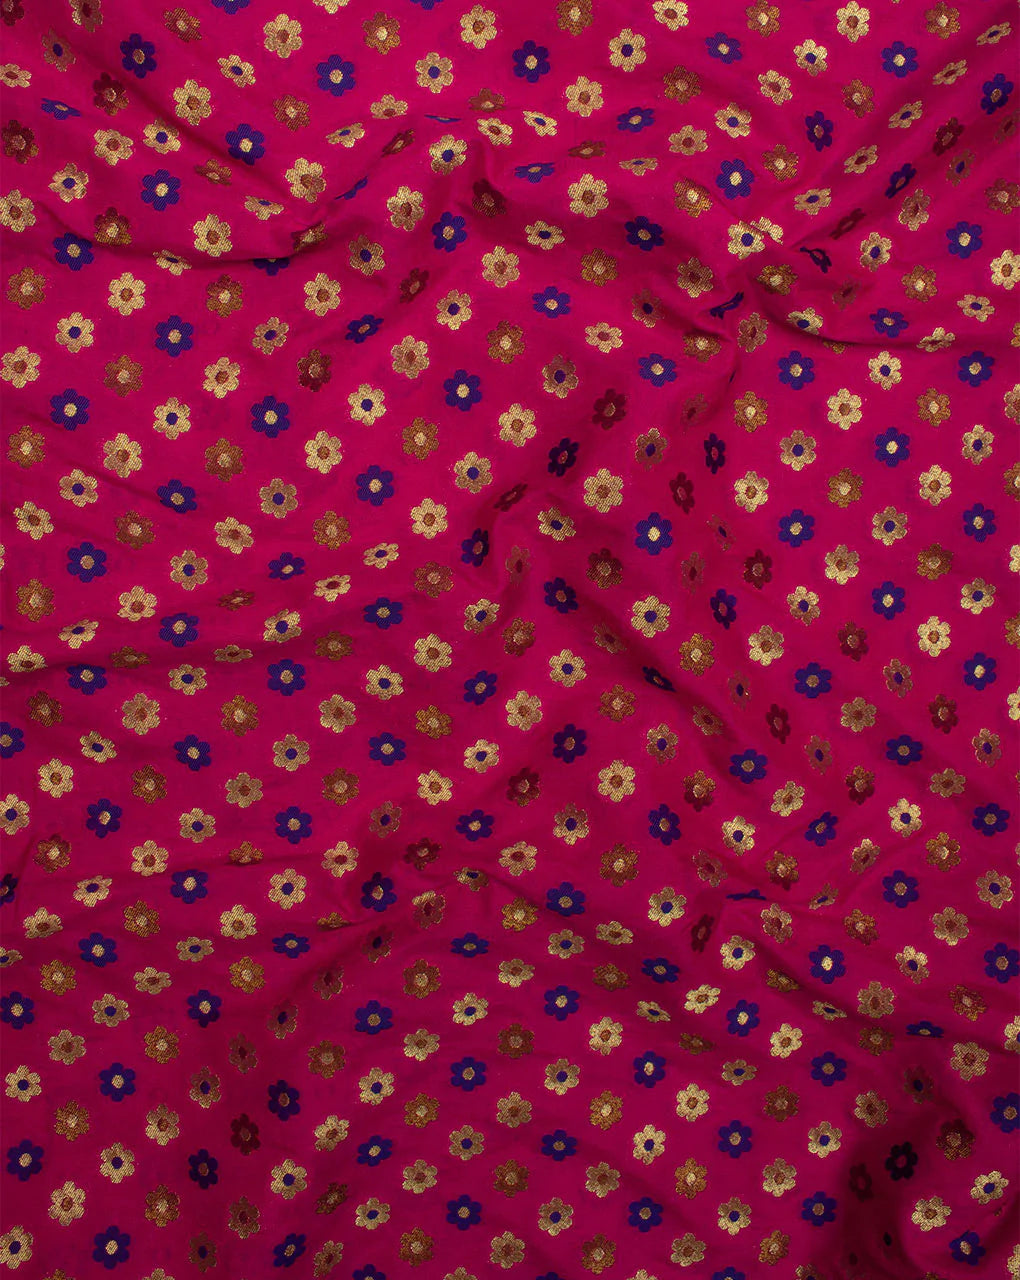 Zari Jacquard Banarasi Taffeta Silk Fabric - Fabriclore.com